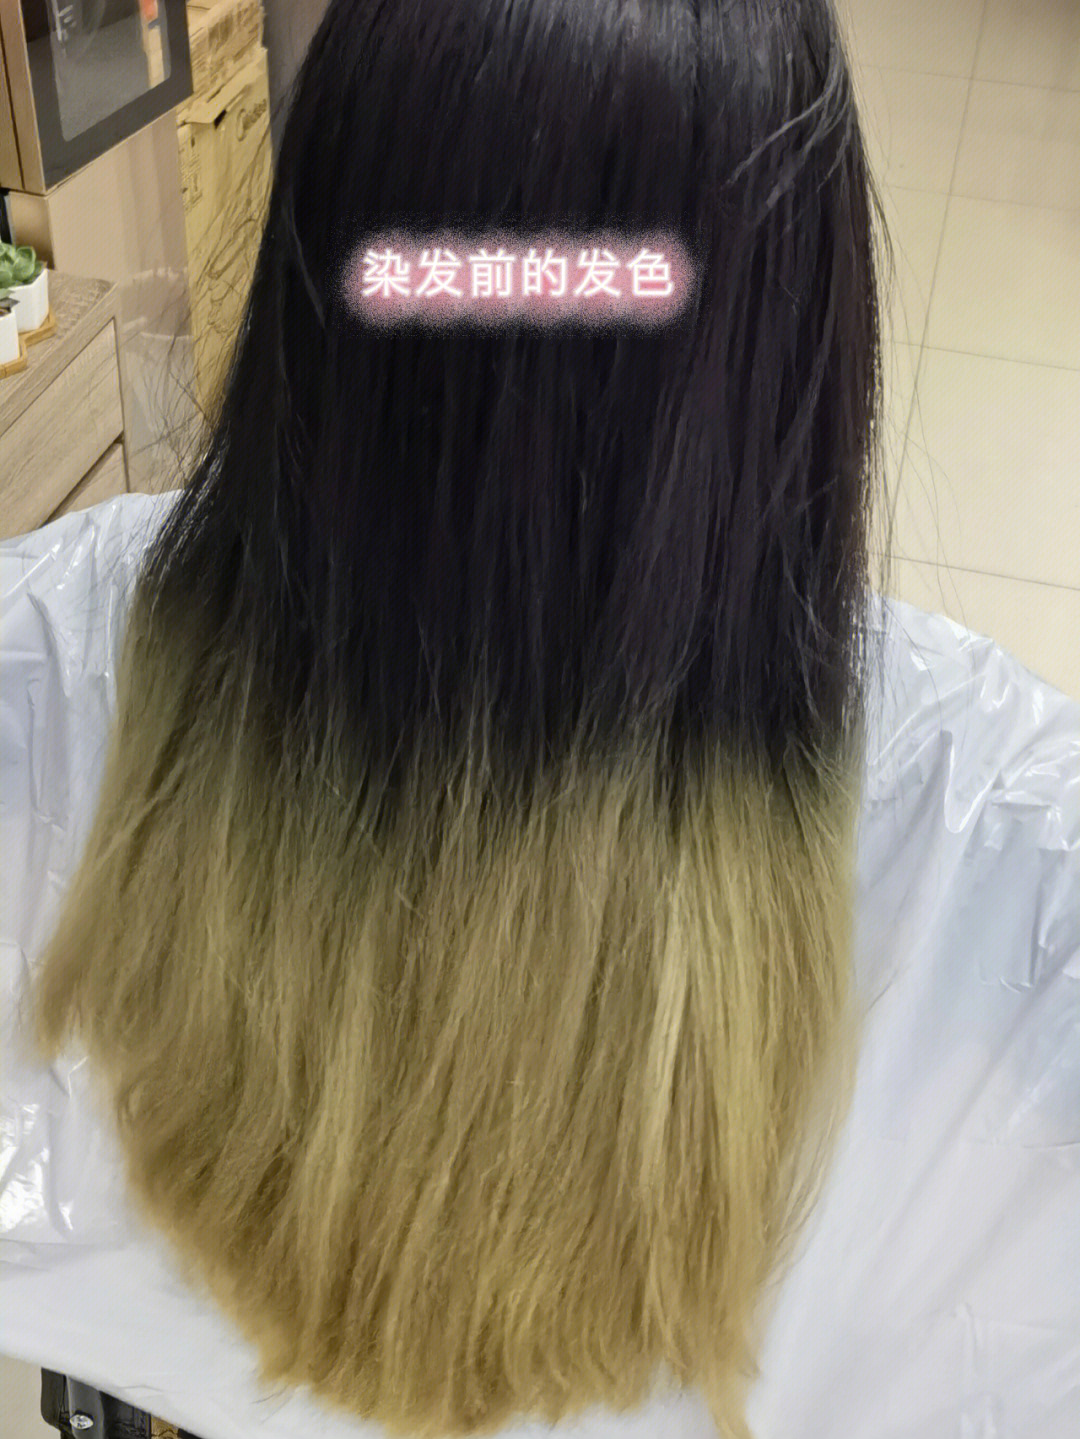 染的掉色后灰色偏重第十二天后就没记录头发的变色情况但是真的是每洗